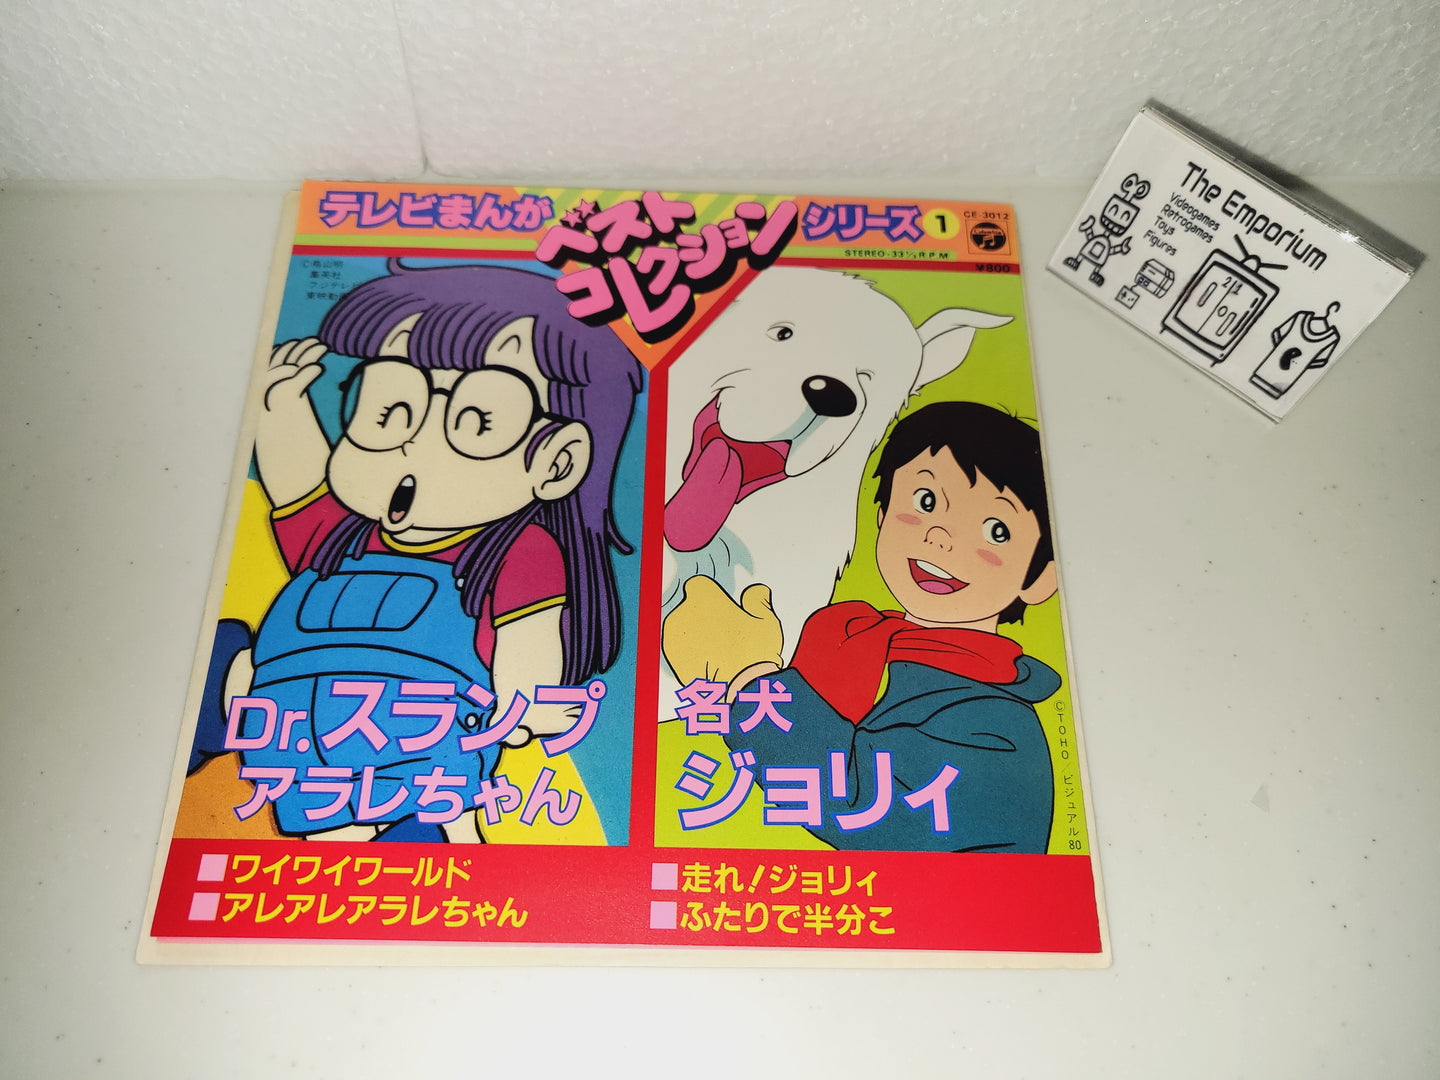 TV Manga Best Collection Series 1 Dr. Slump Arale-chan / Meiken Jolie Vinyl Record - japanese original soundtrack japan vinyl disc LP